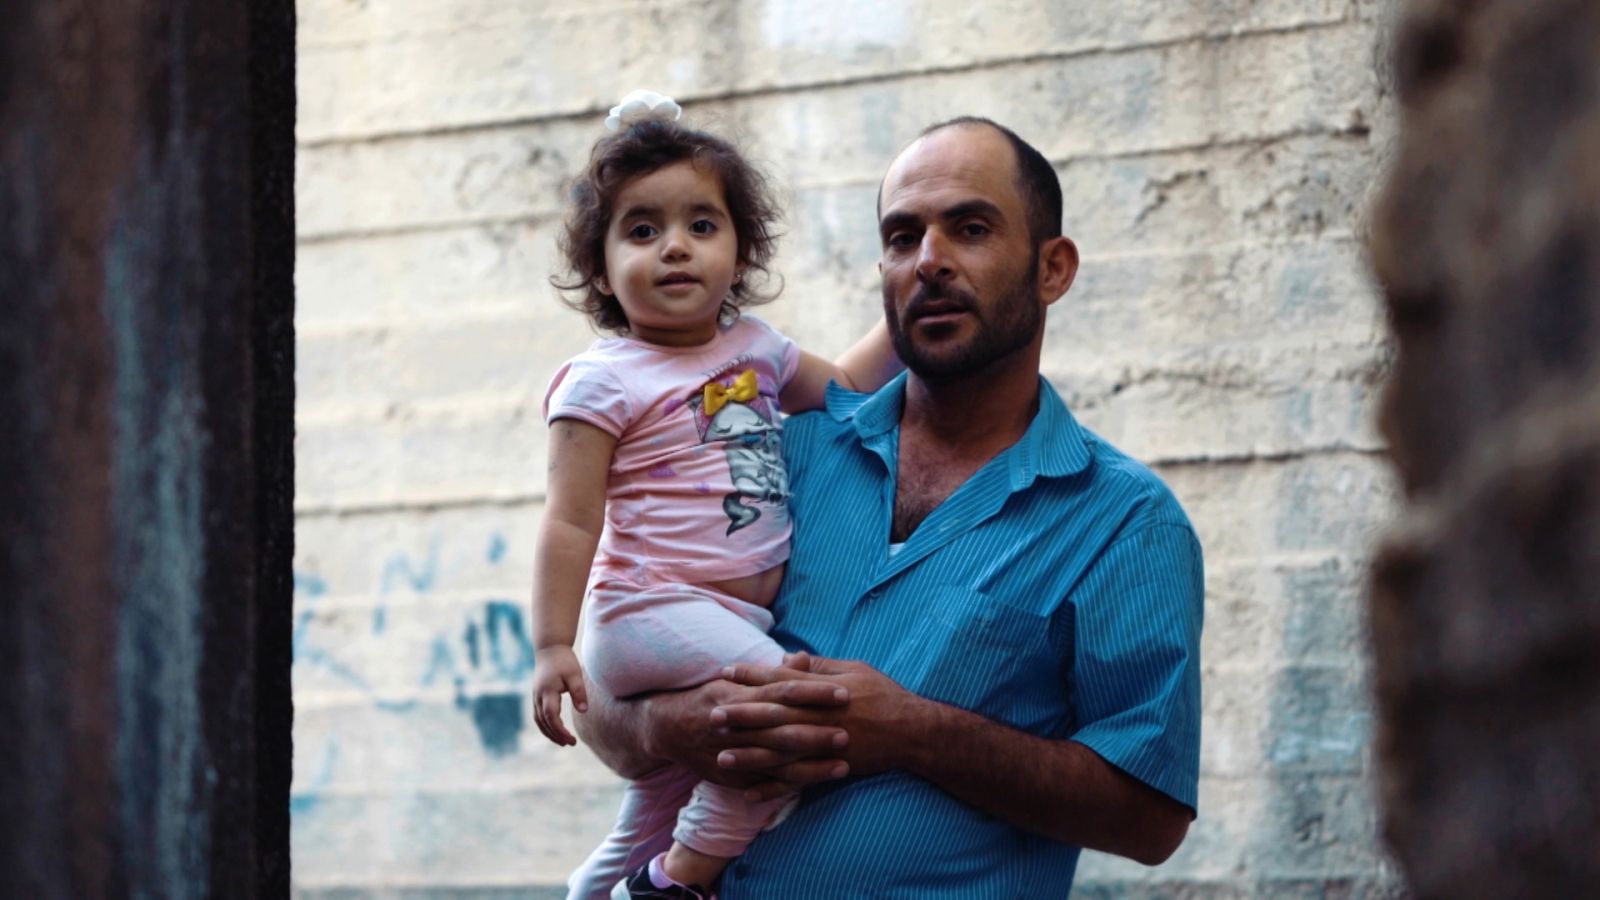 Samarbejde mellem danske og palæstinensiske filmtalenter skal give mere nuancerede historier</br>Still fra filmen I’m Fine, 2017 (instrueret af Felipe Roa, produceret af Issa Shamali)</br>Foto: Filmstill